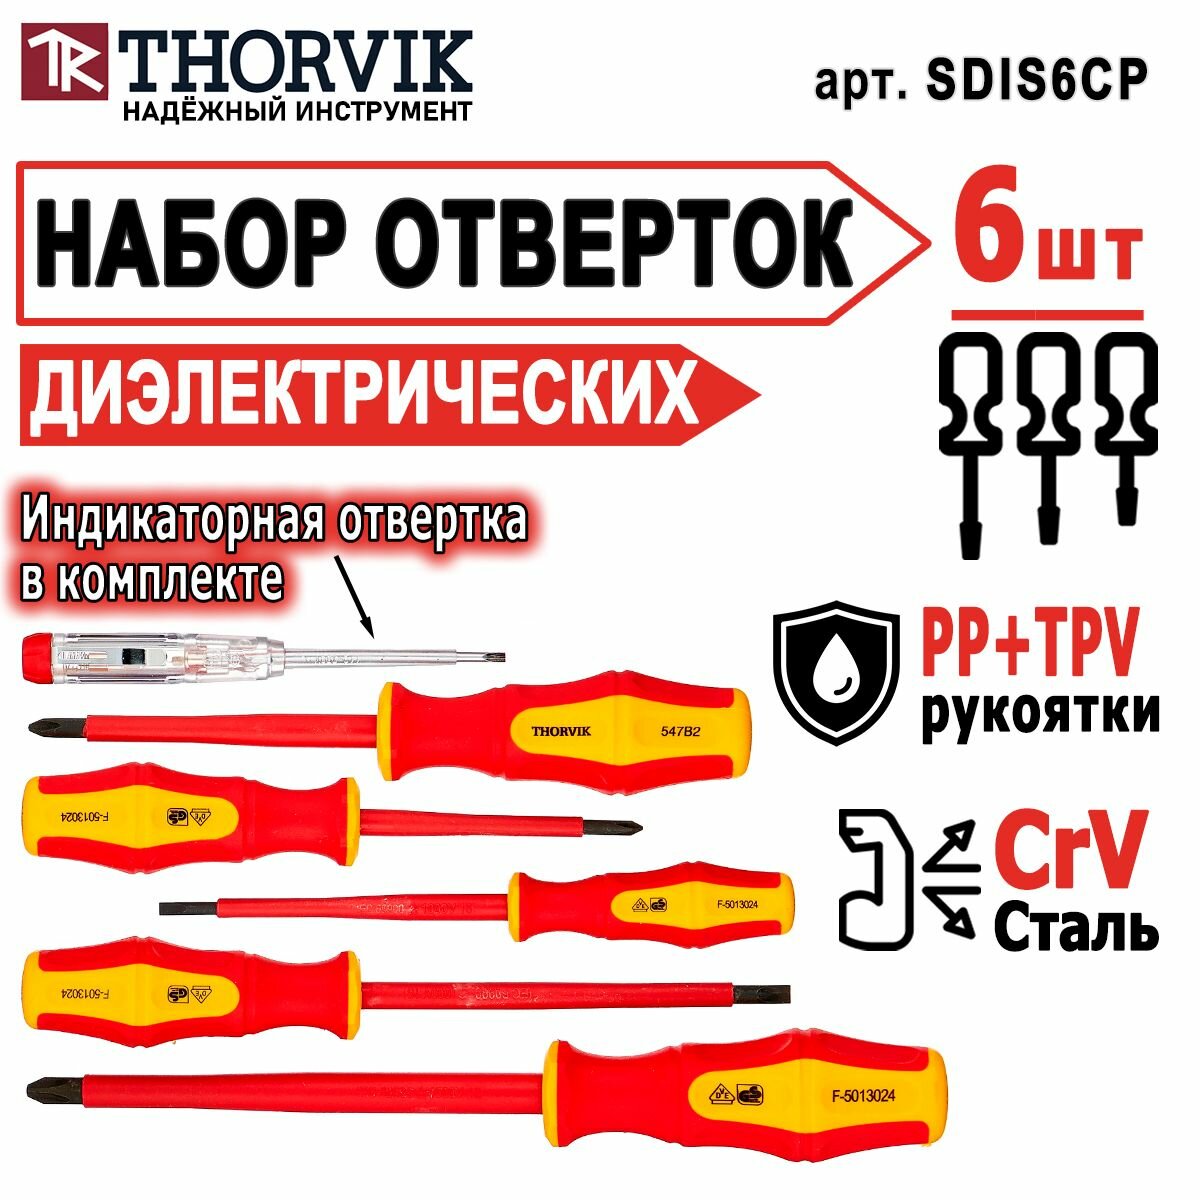 Набор стержневых диэлектрических отверток VDE Thorvik SDIS6CP 6 предметов, для дома, для автомобиля, SrV сталь, с защитой от химического воздействия